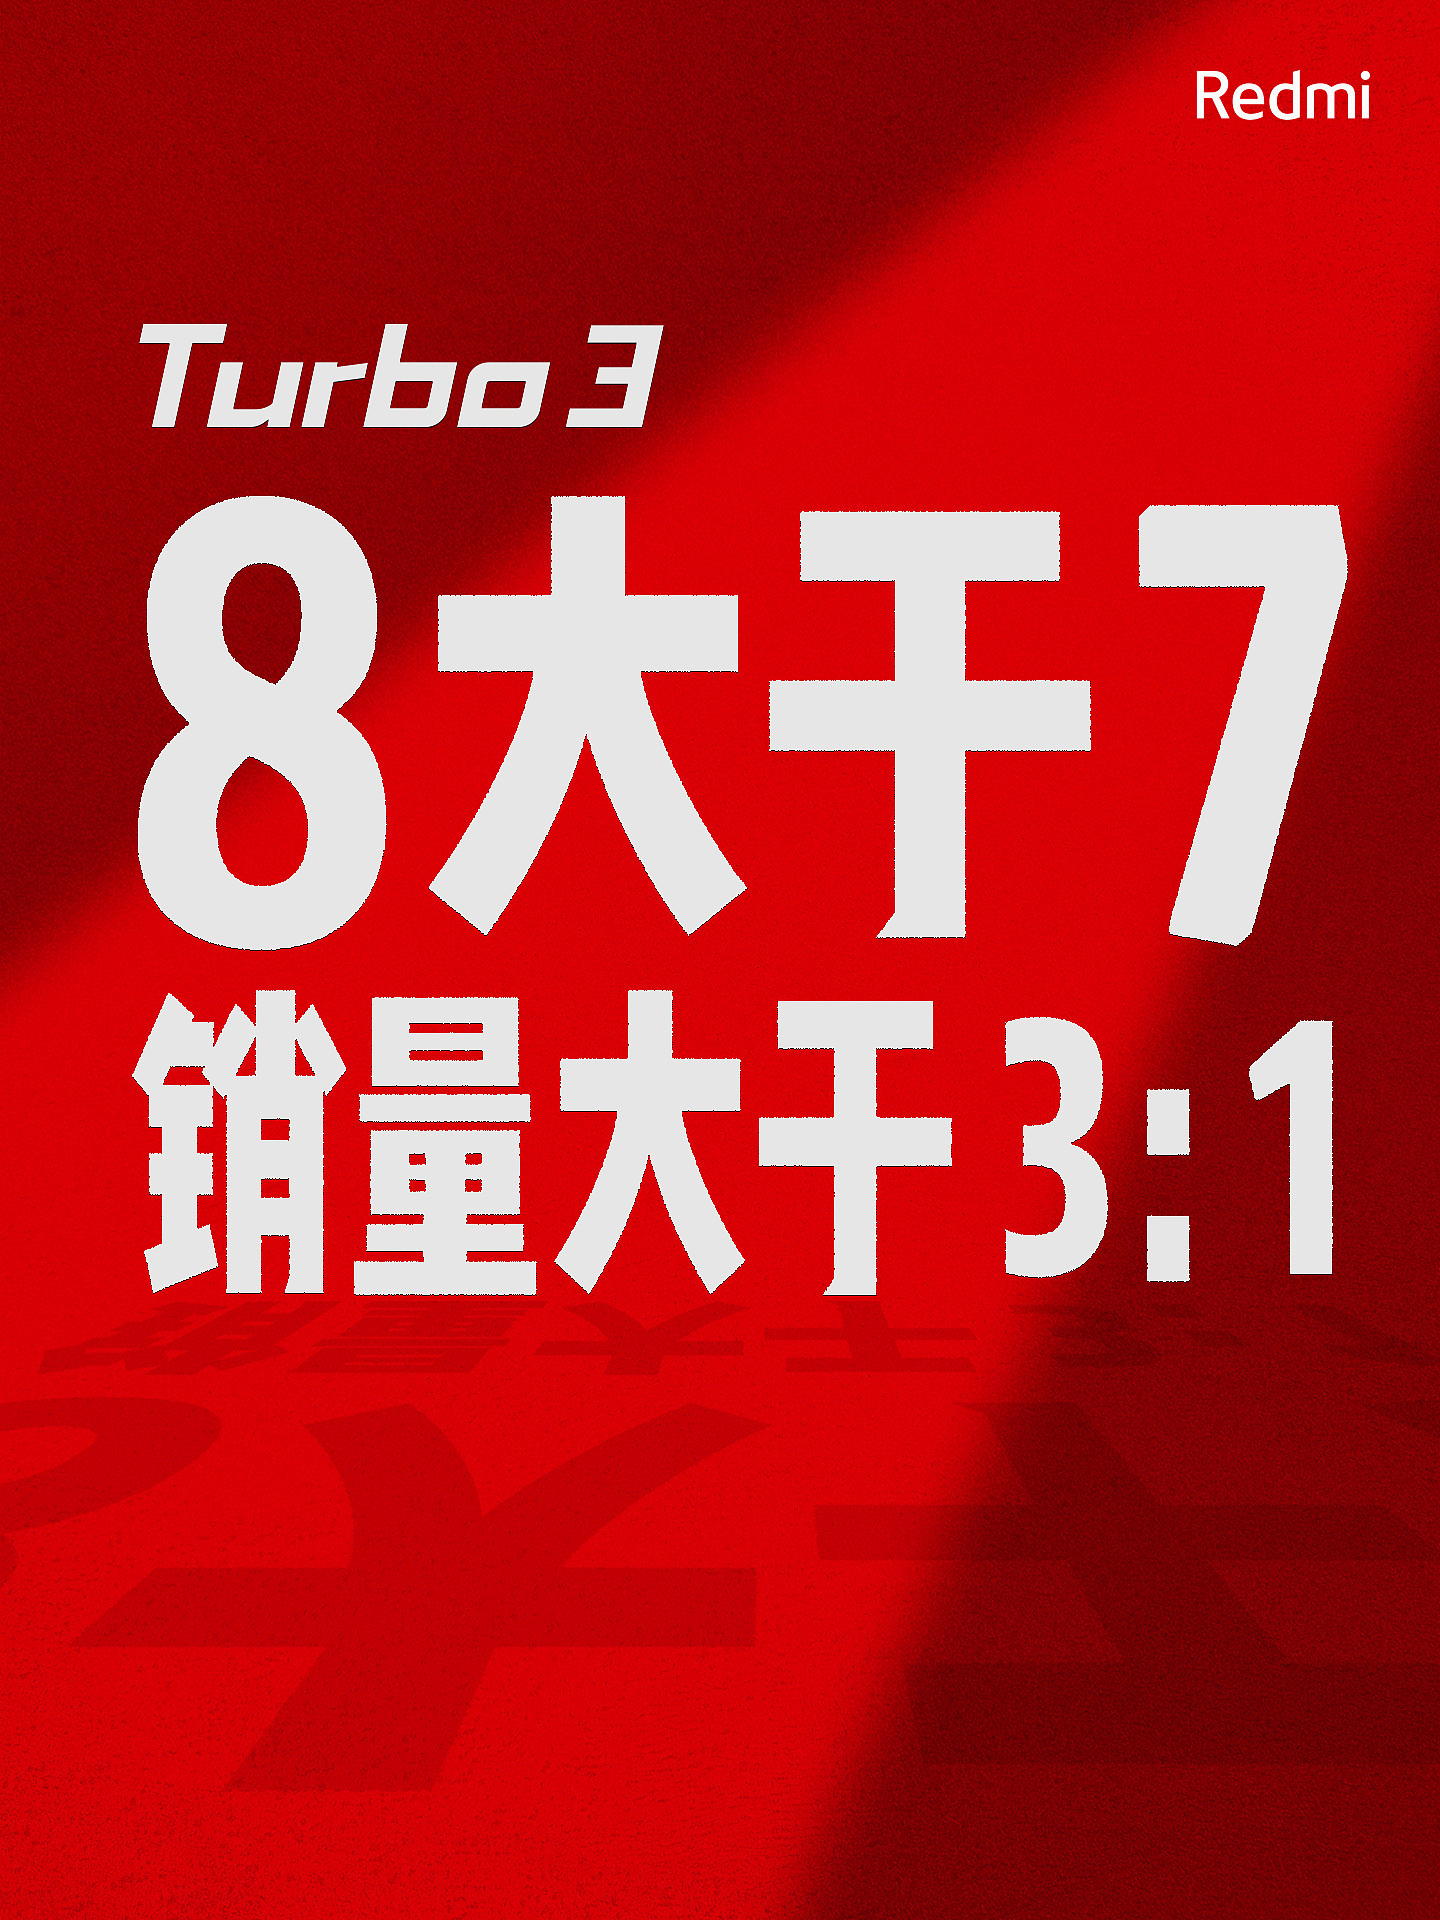 Redmi Turbo 3 手机首销目标达成，王腾抽送小米 SU7 一年使用权 - 2